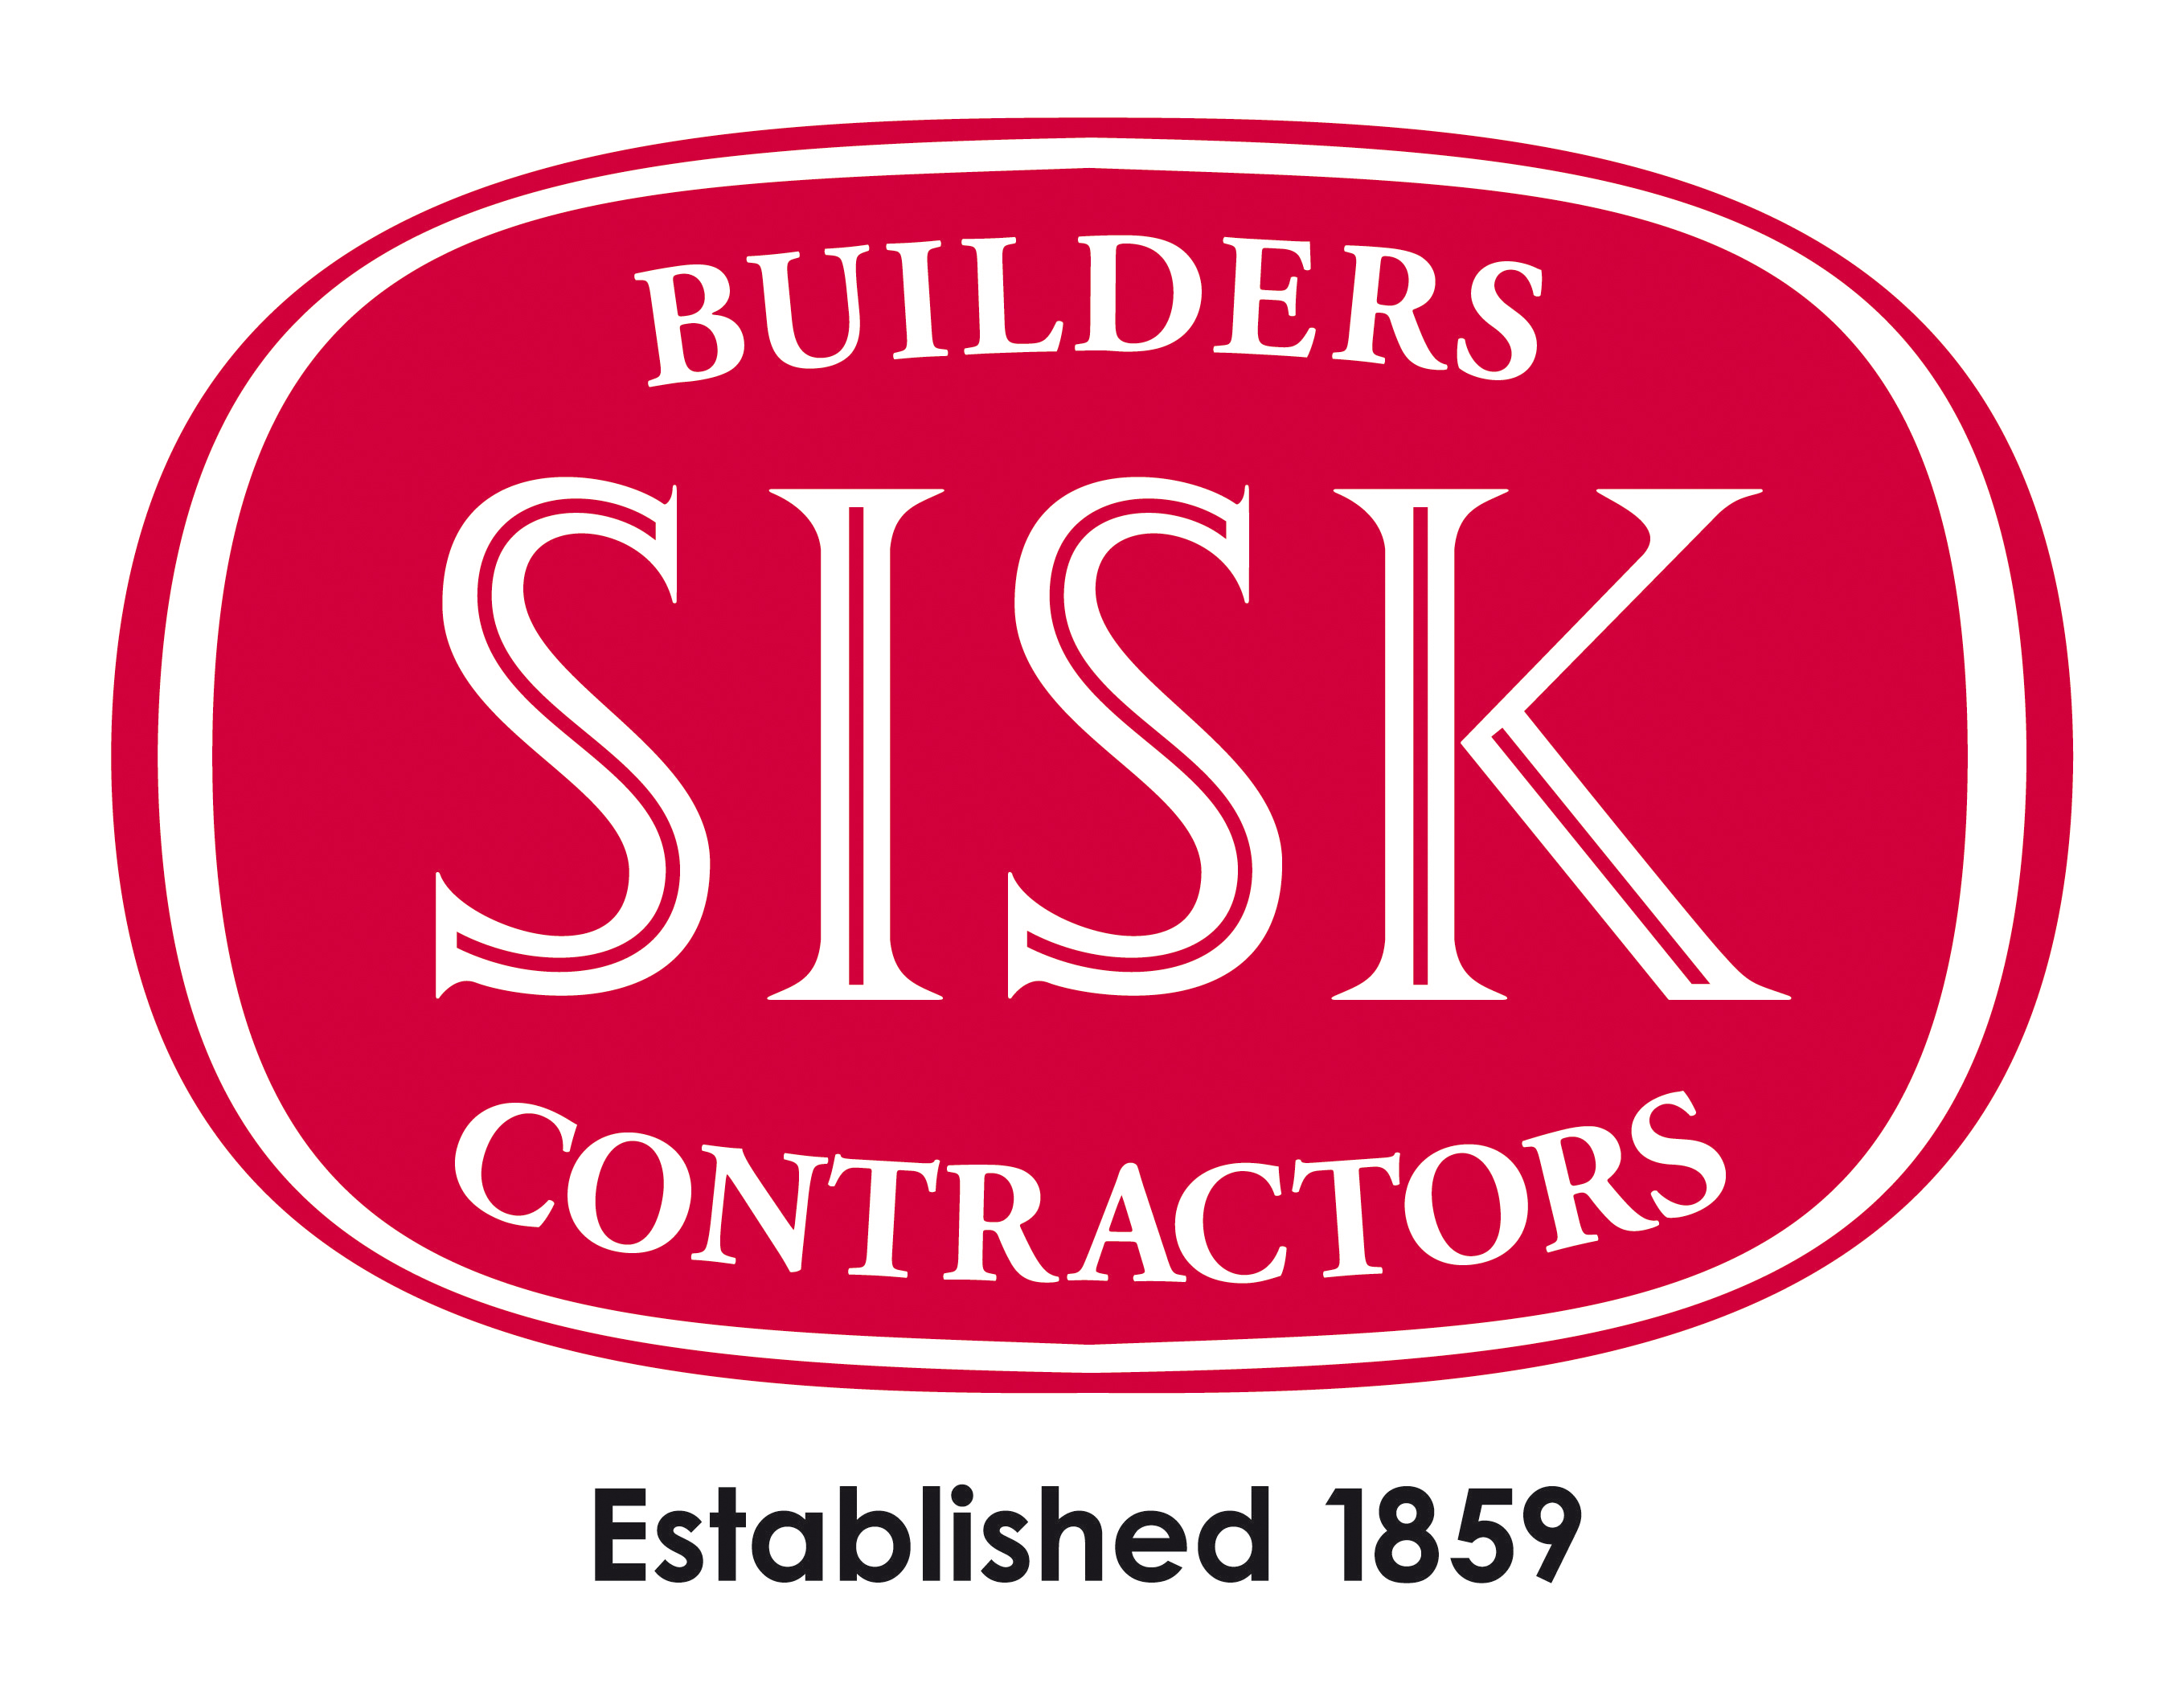 Sisk Contractors - GDC Construction